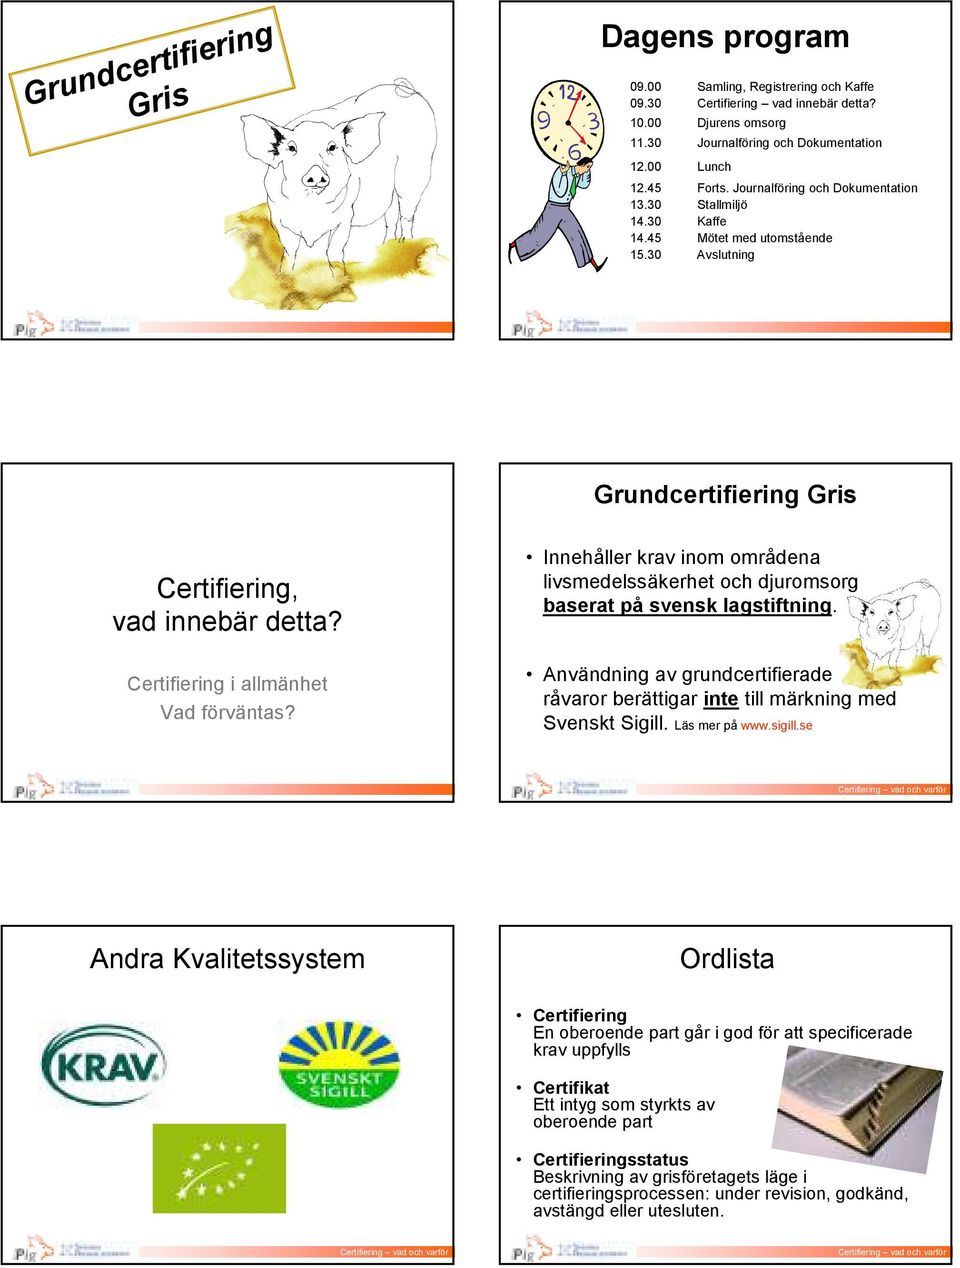 Certifiering i allmänhet Vad förväntas? Innehåller krav inom områdena livsmedelssäkerhet och djuromsorg baserat på svensk lagstiftning.